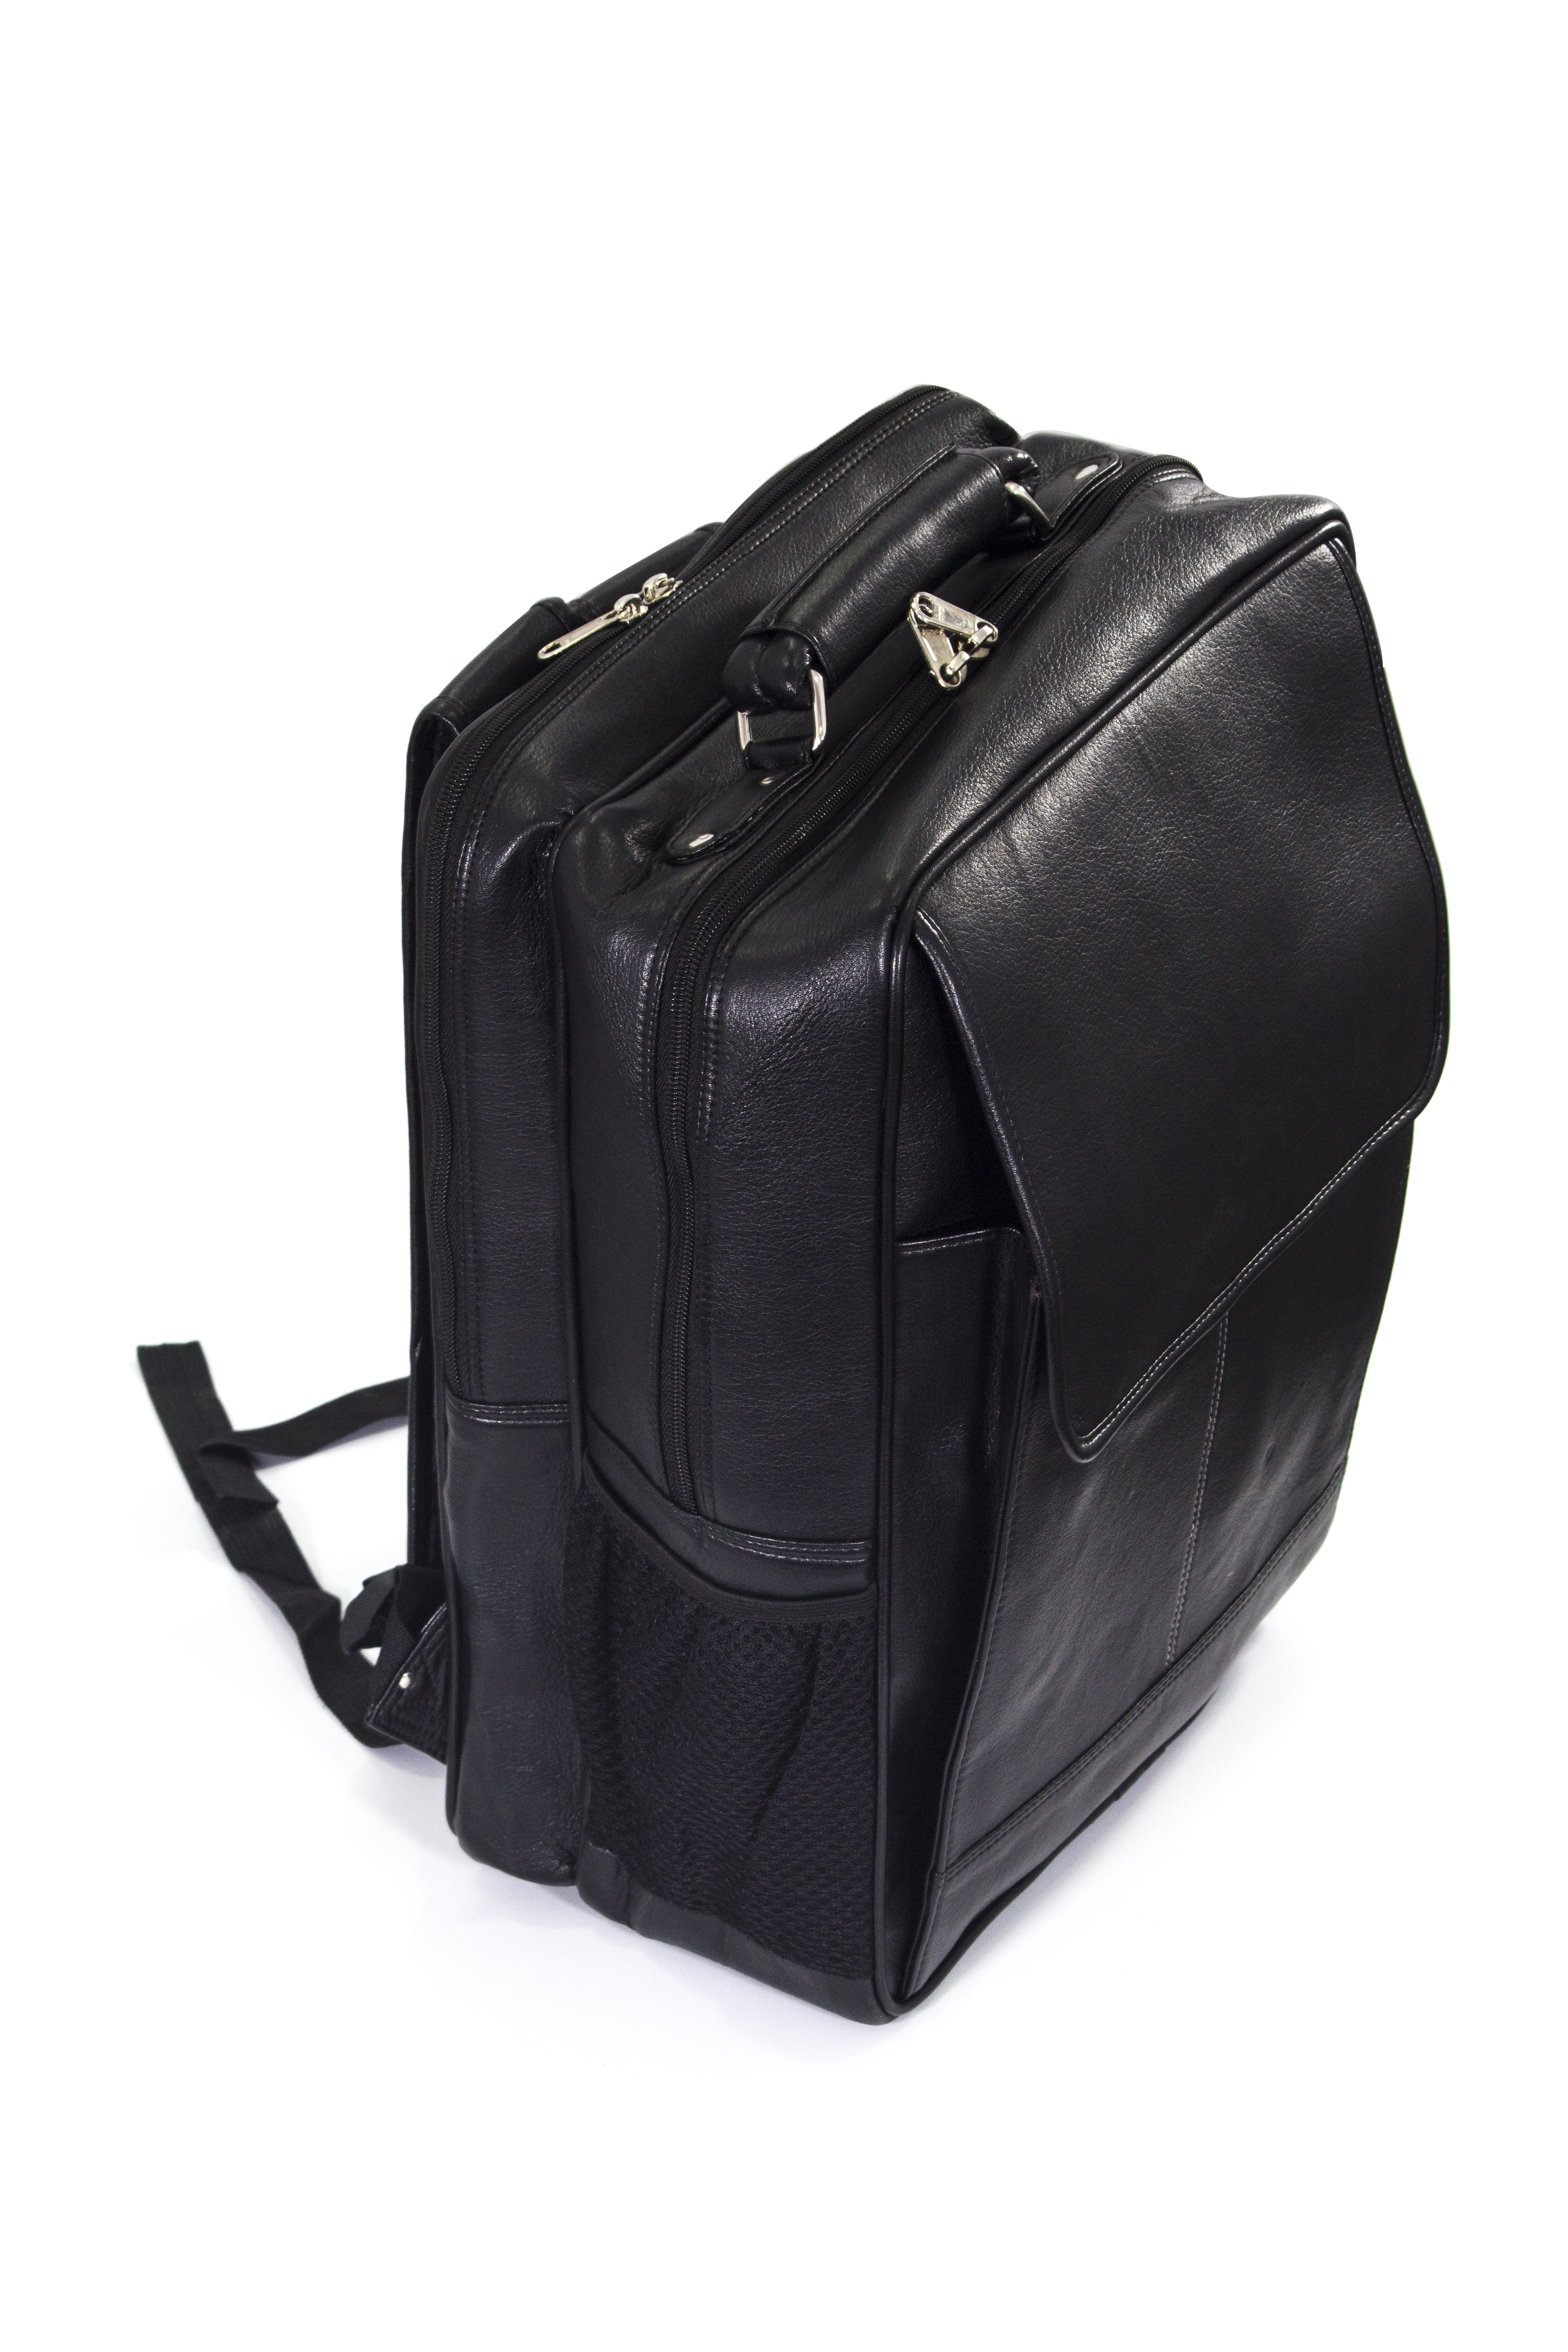 Leatherette Expandable Laptop Bag